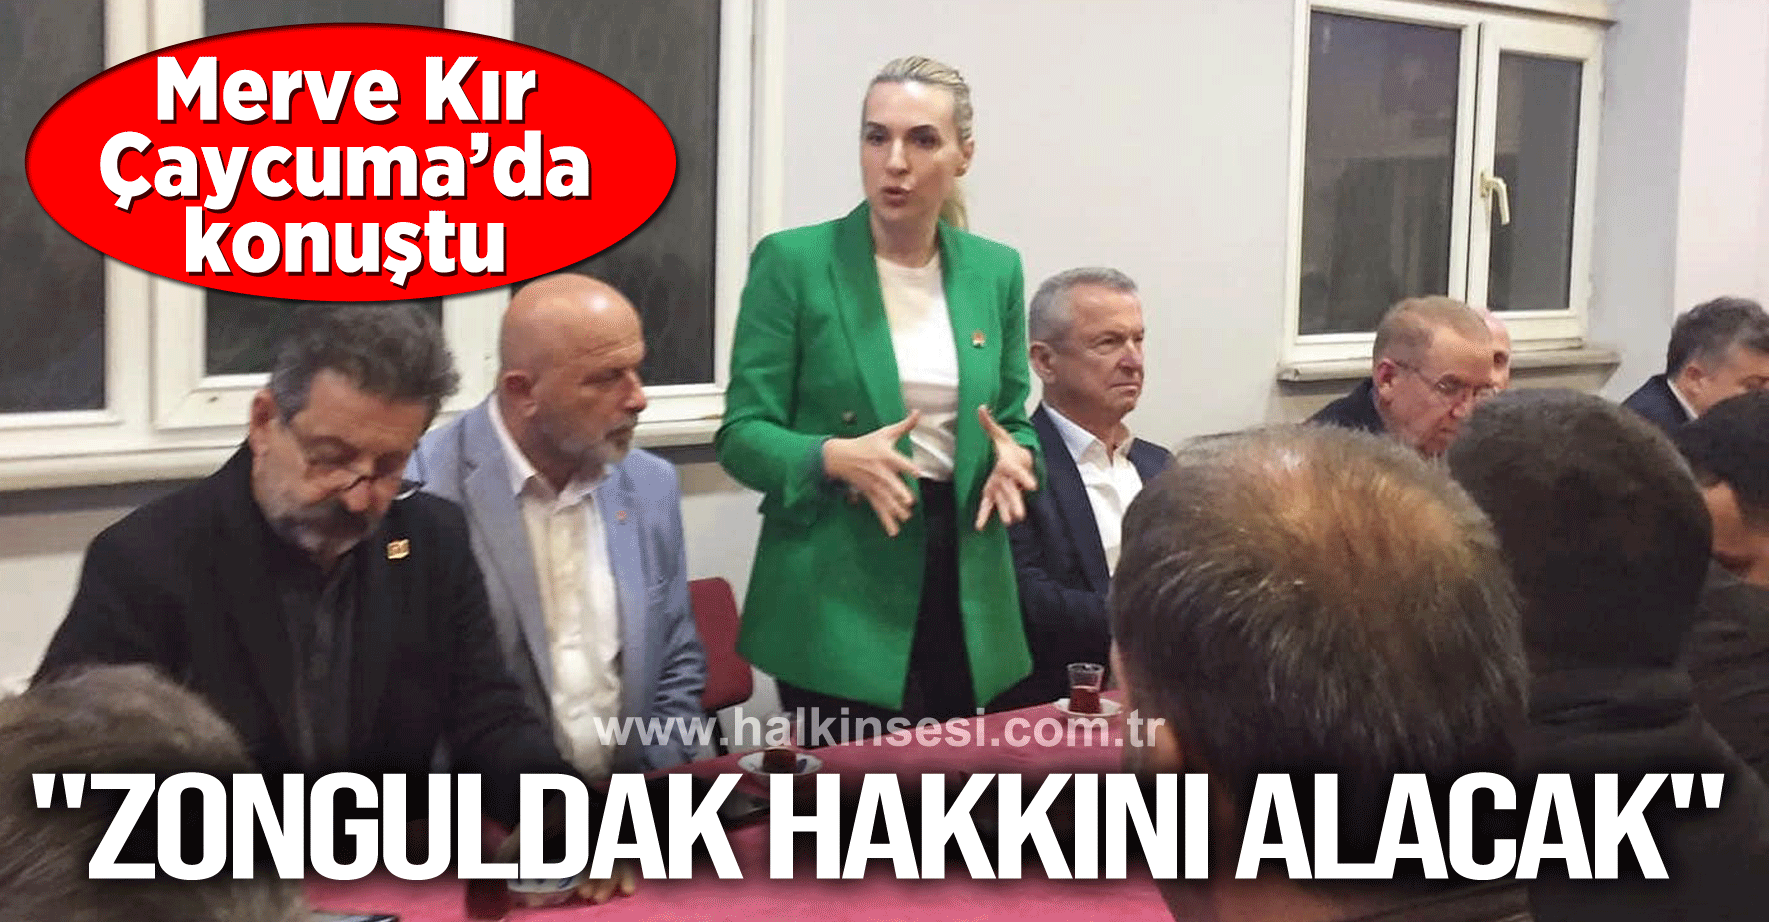 "Zonguldak hakkını alacak"